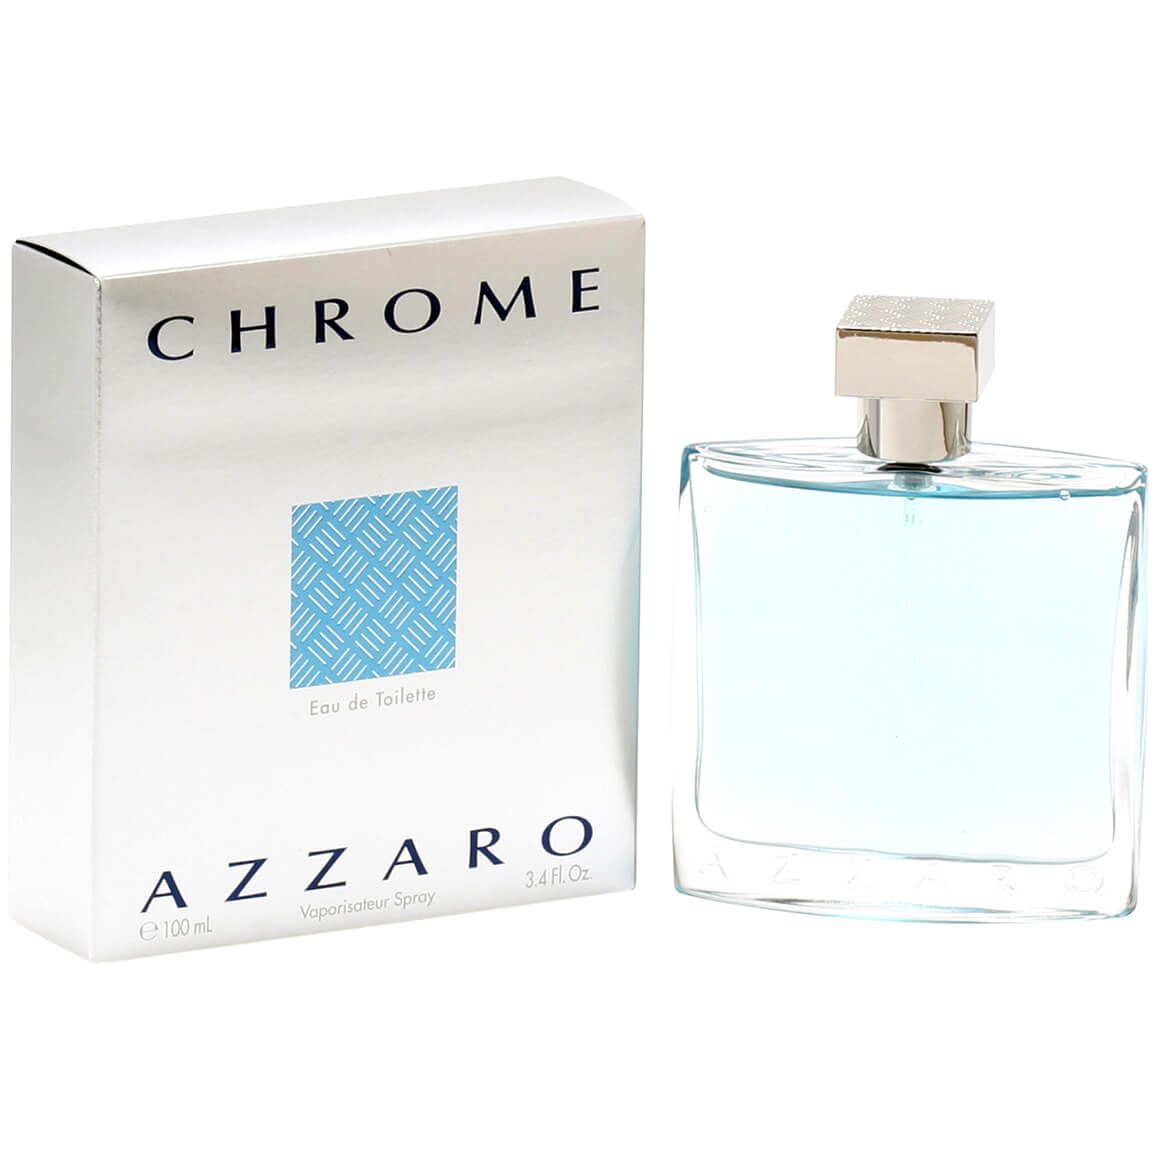 Azzaro Chrome for Men EDT - 3.4oz + '-' + 357276